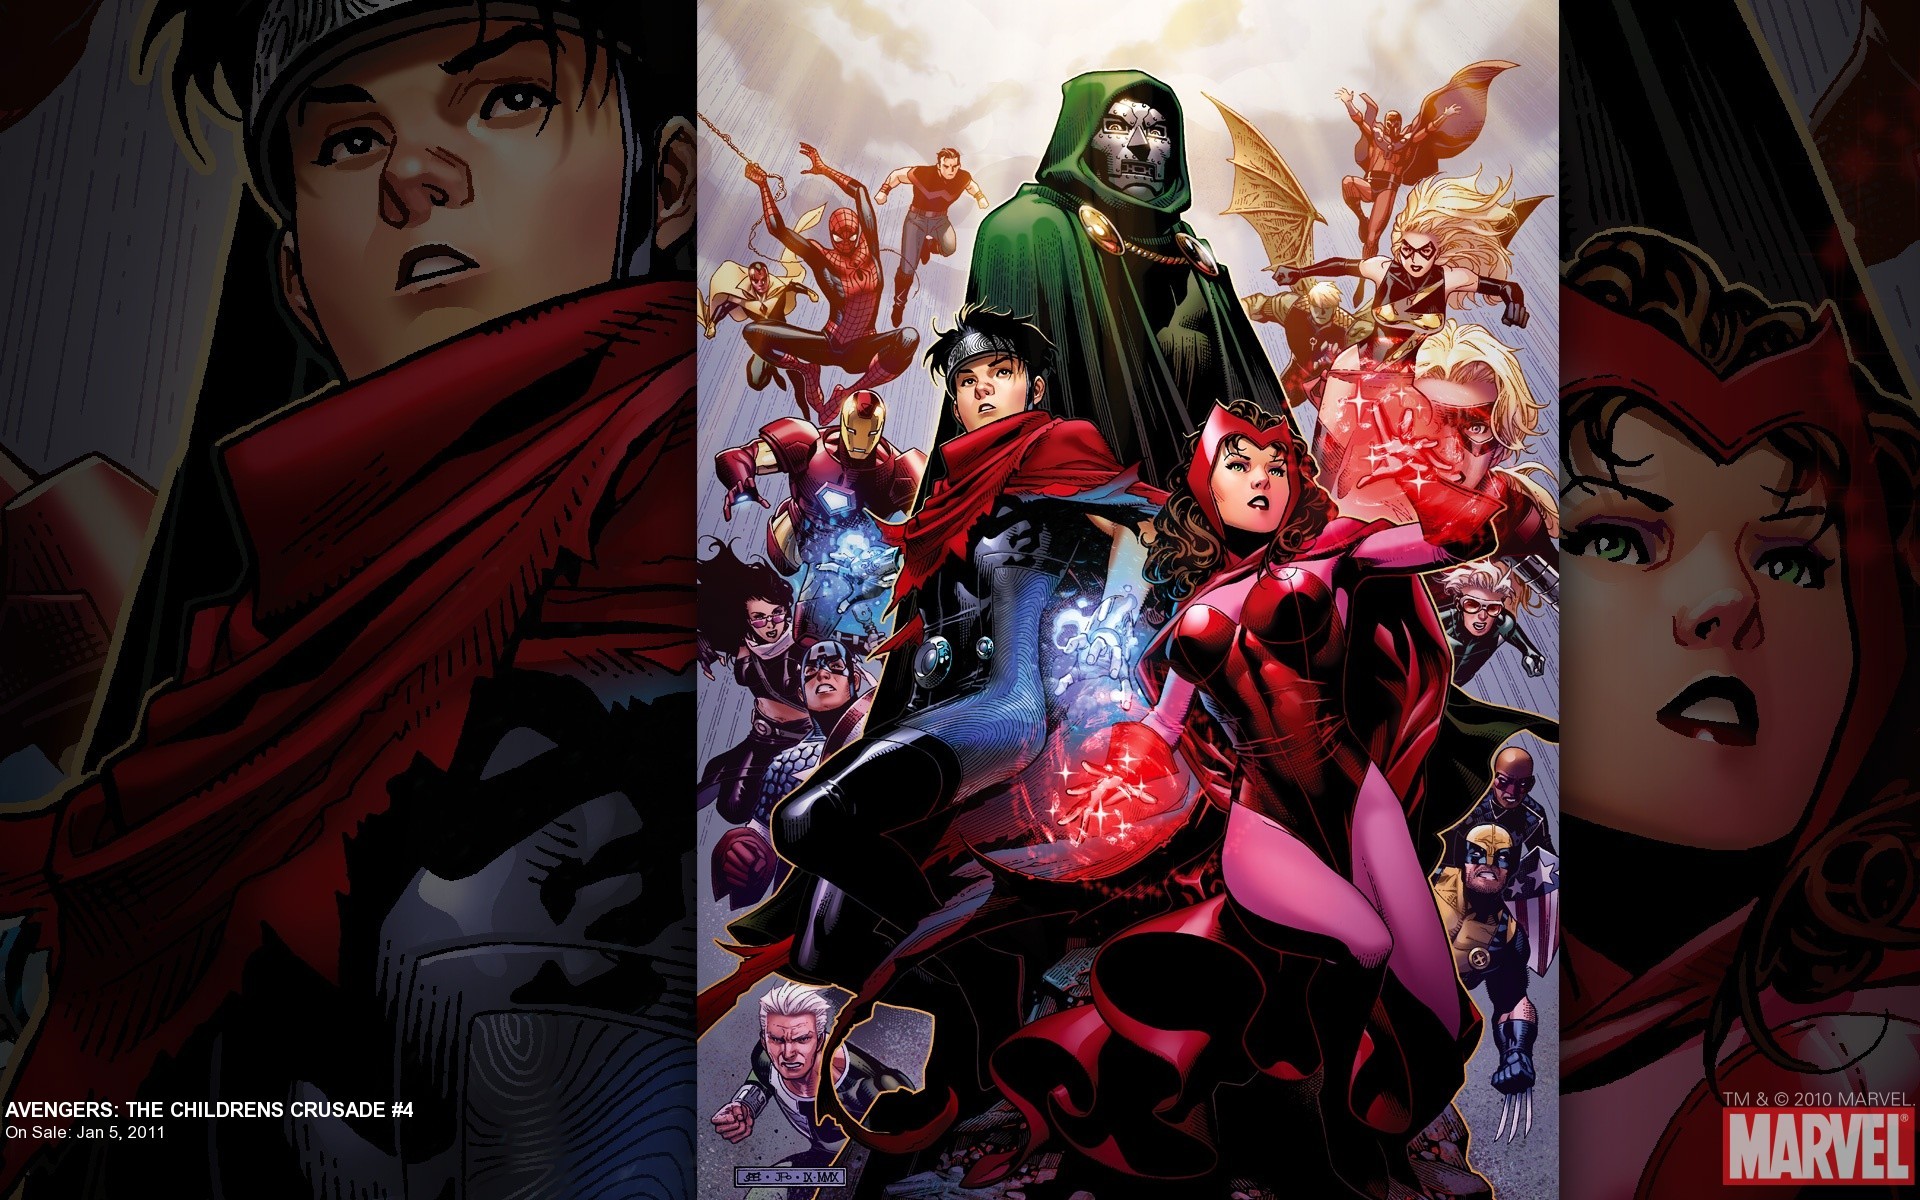 Bande-dessinées Avengers: The Children's Crusade Fond d'écran HD | Image